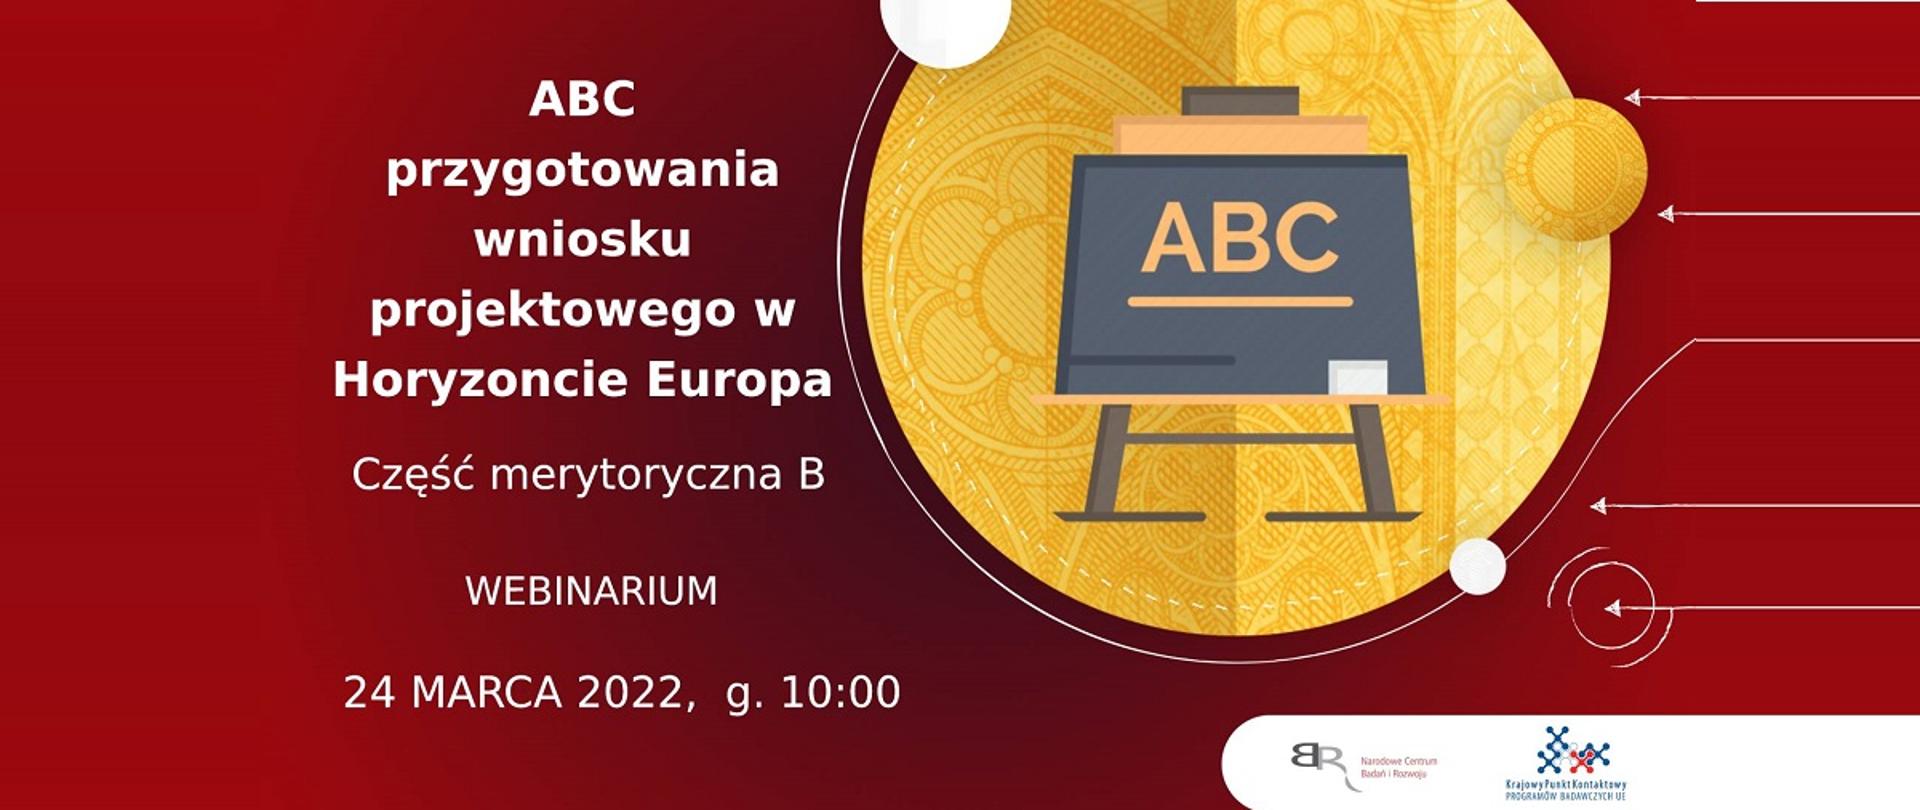 ABC przygotowania wniosku projektowego w Horyzoncie Europa
Część administracyjna B
Webinarium
24 marca 2022, g. 10:00